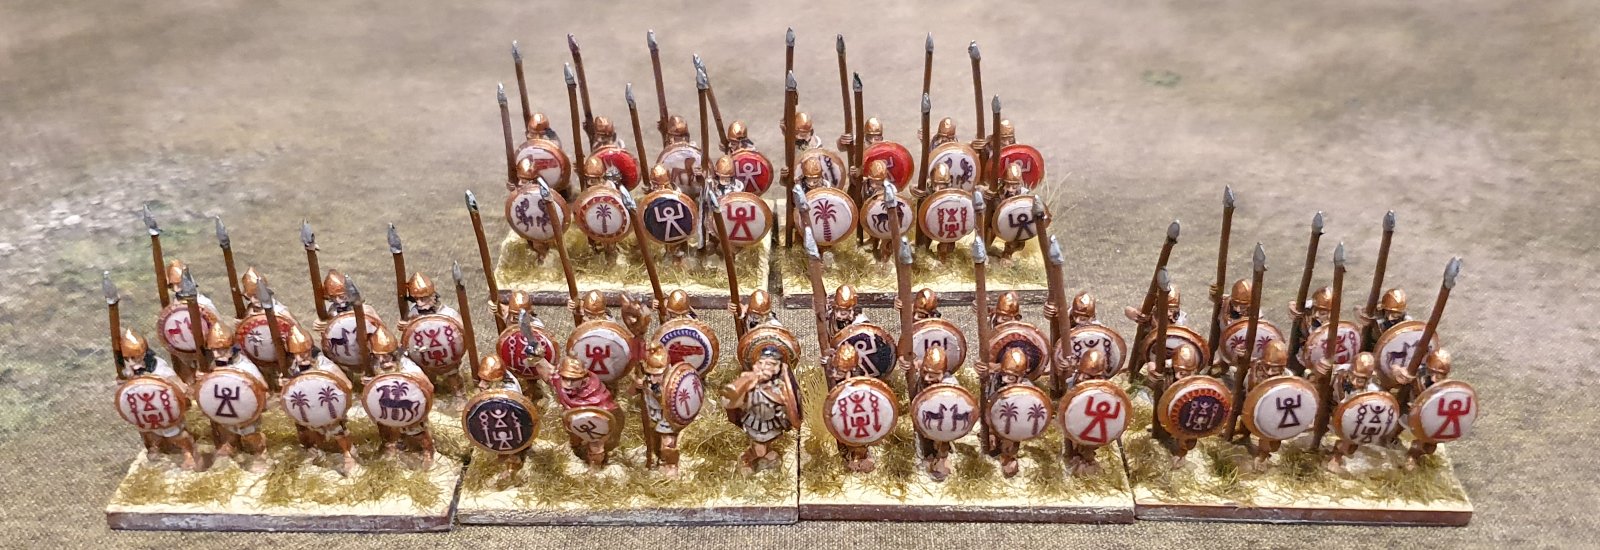 Carthaginian Spearmen